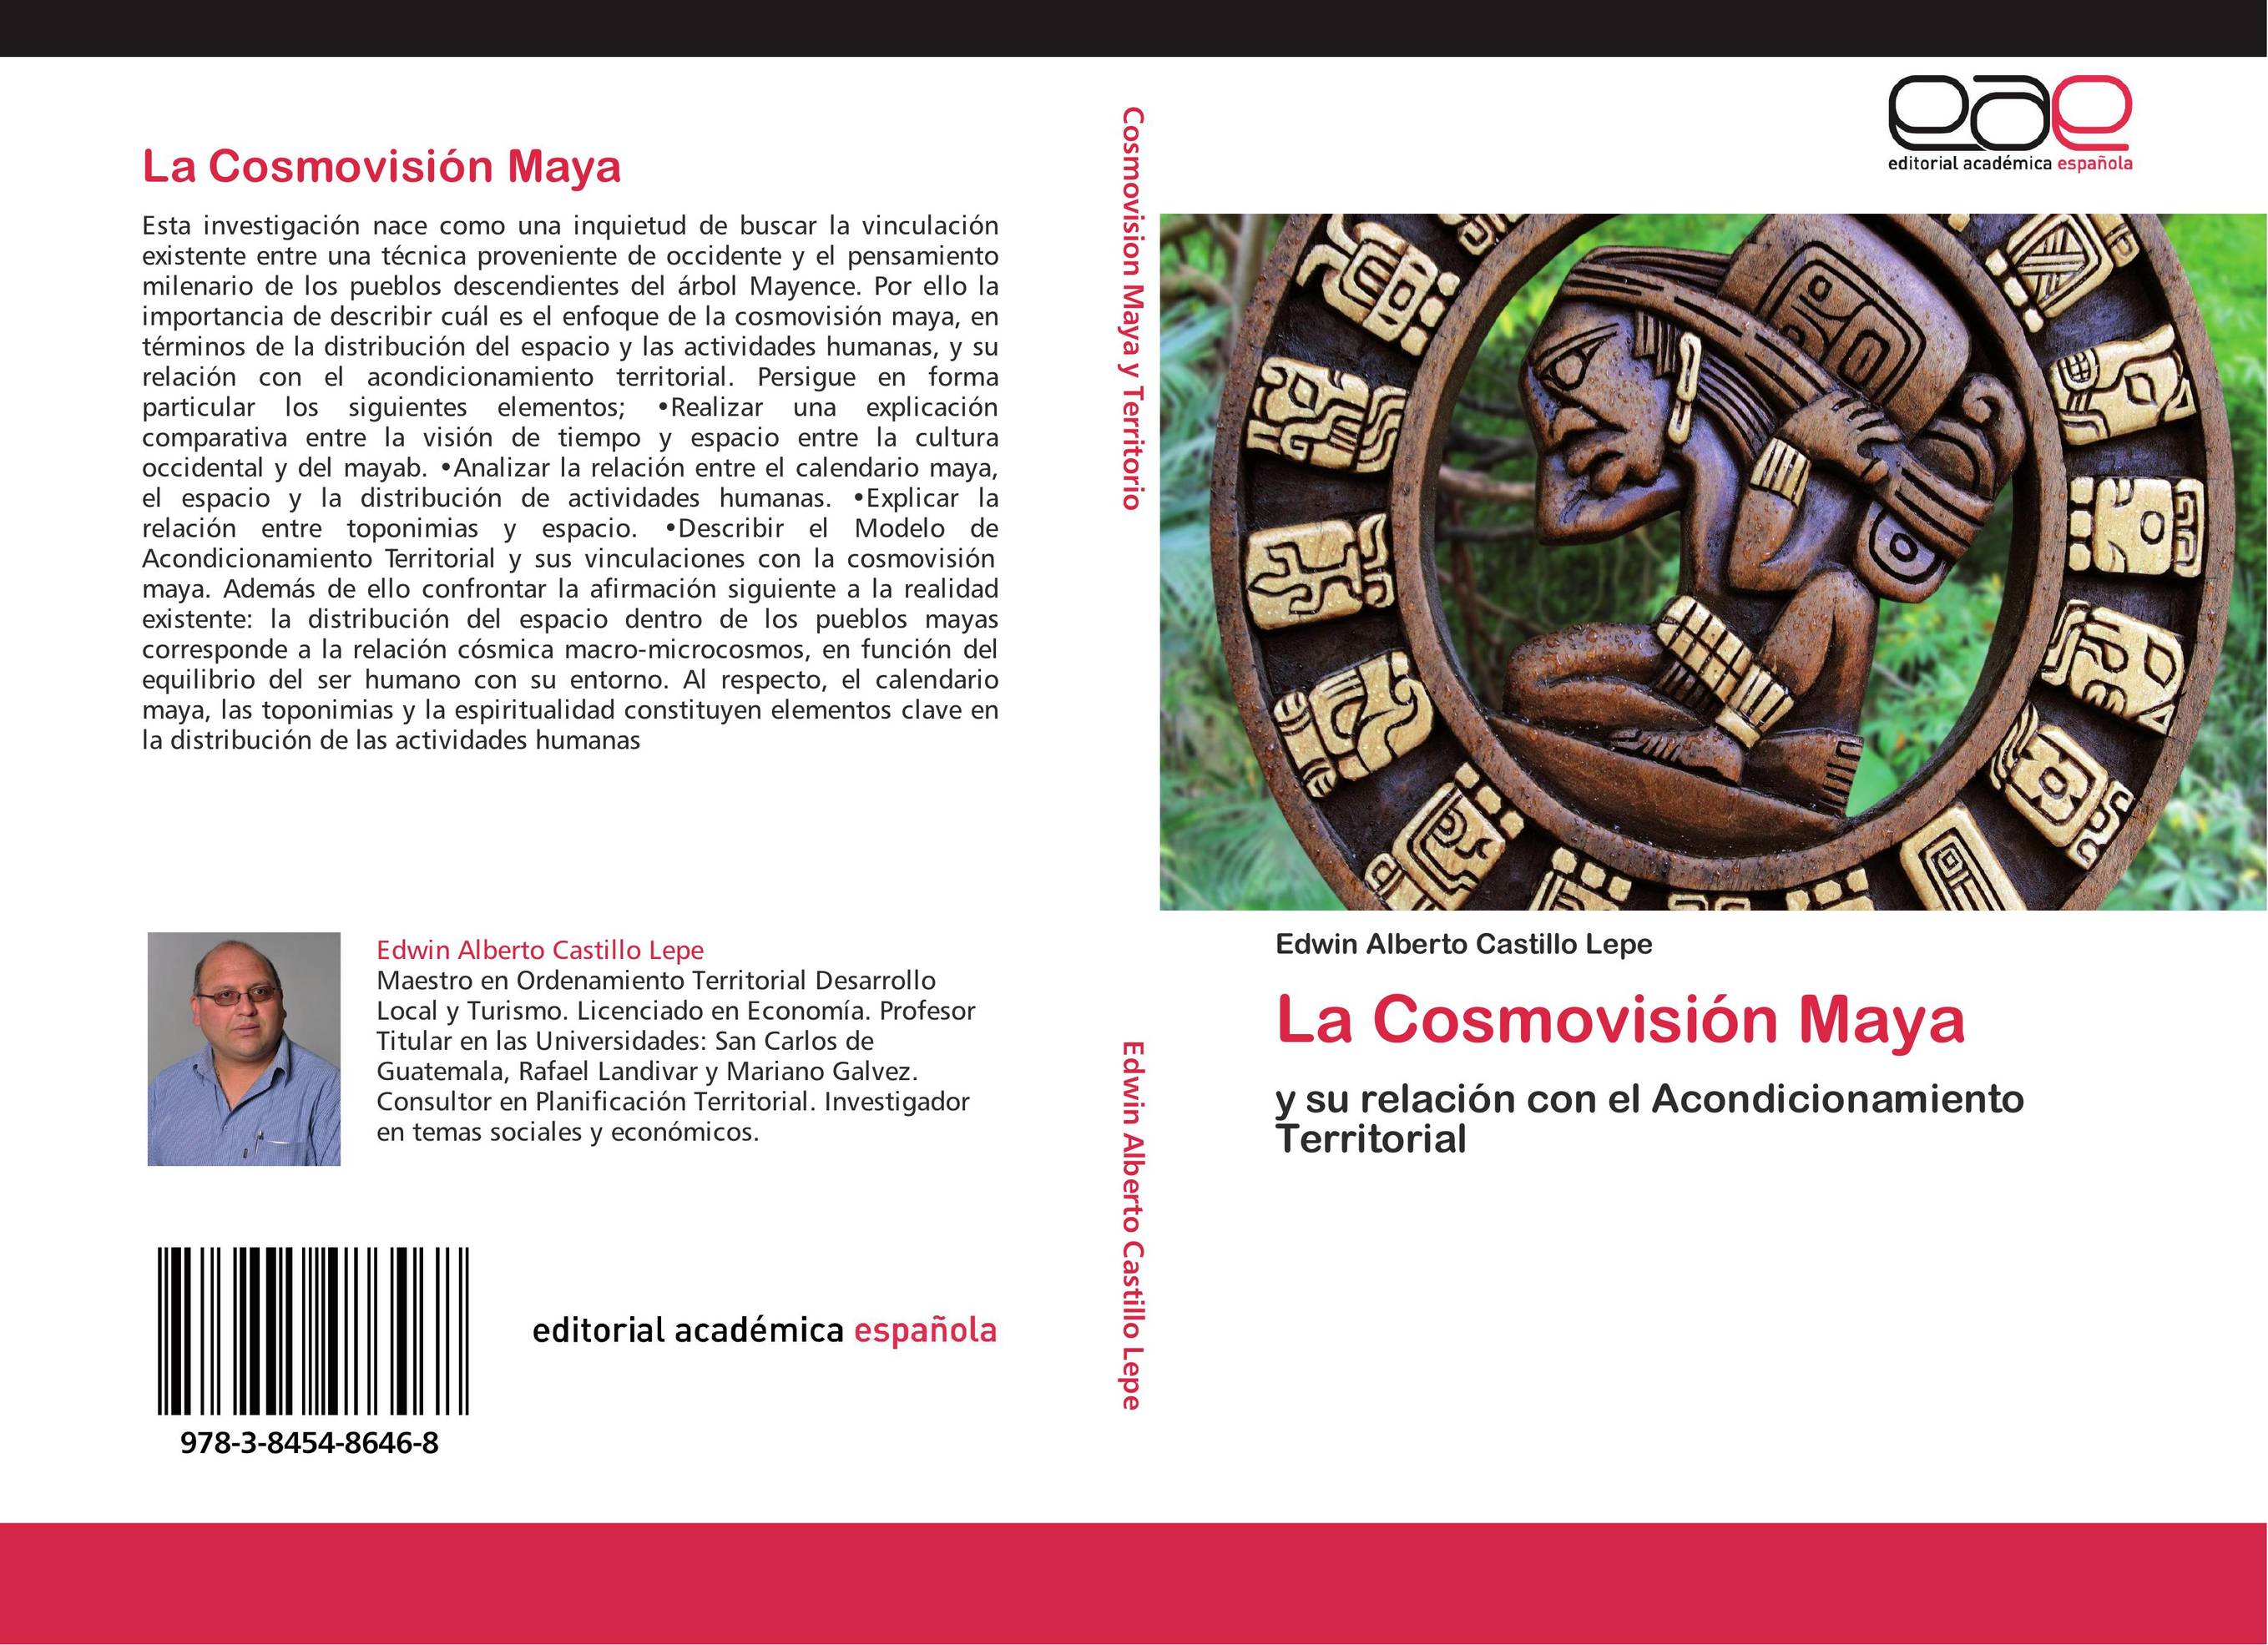 La Cosmovisión Maya